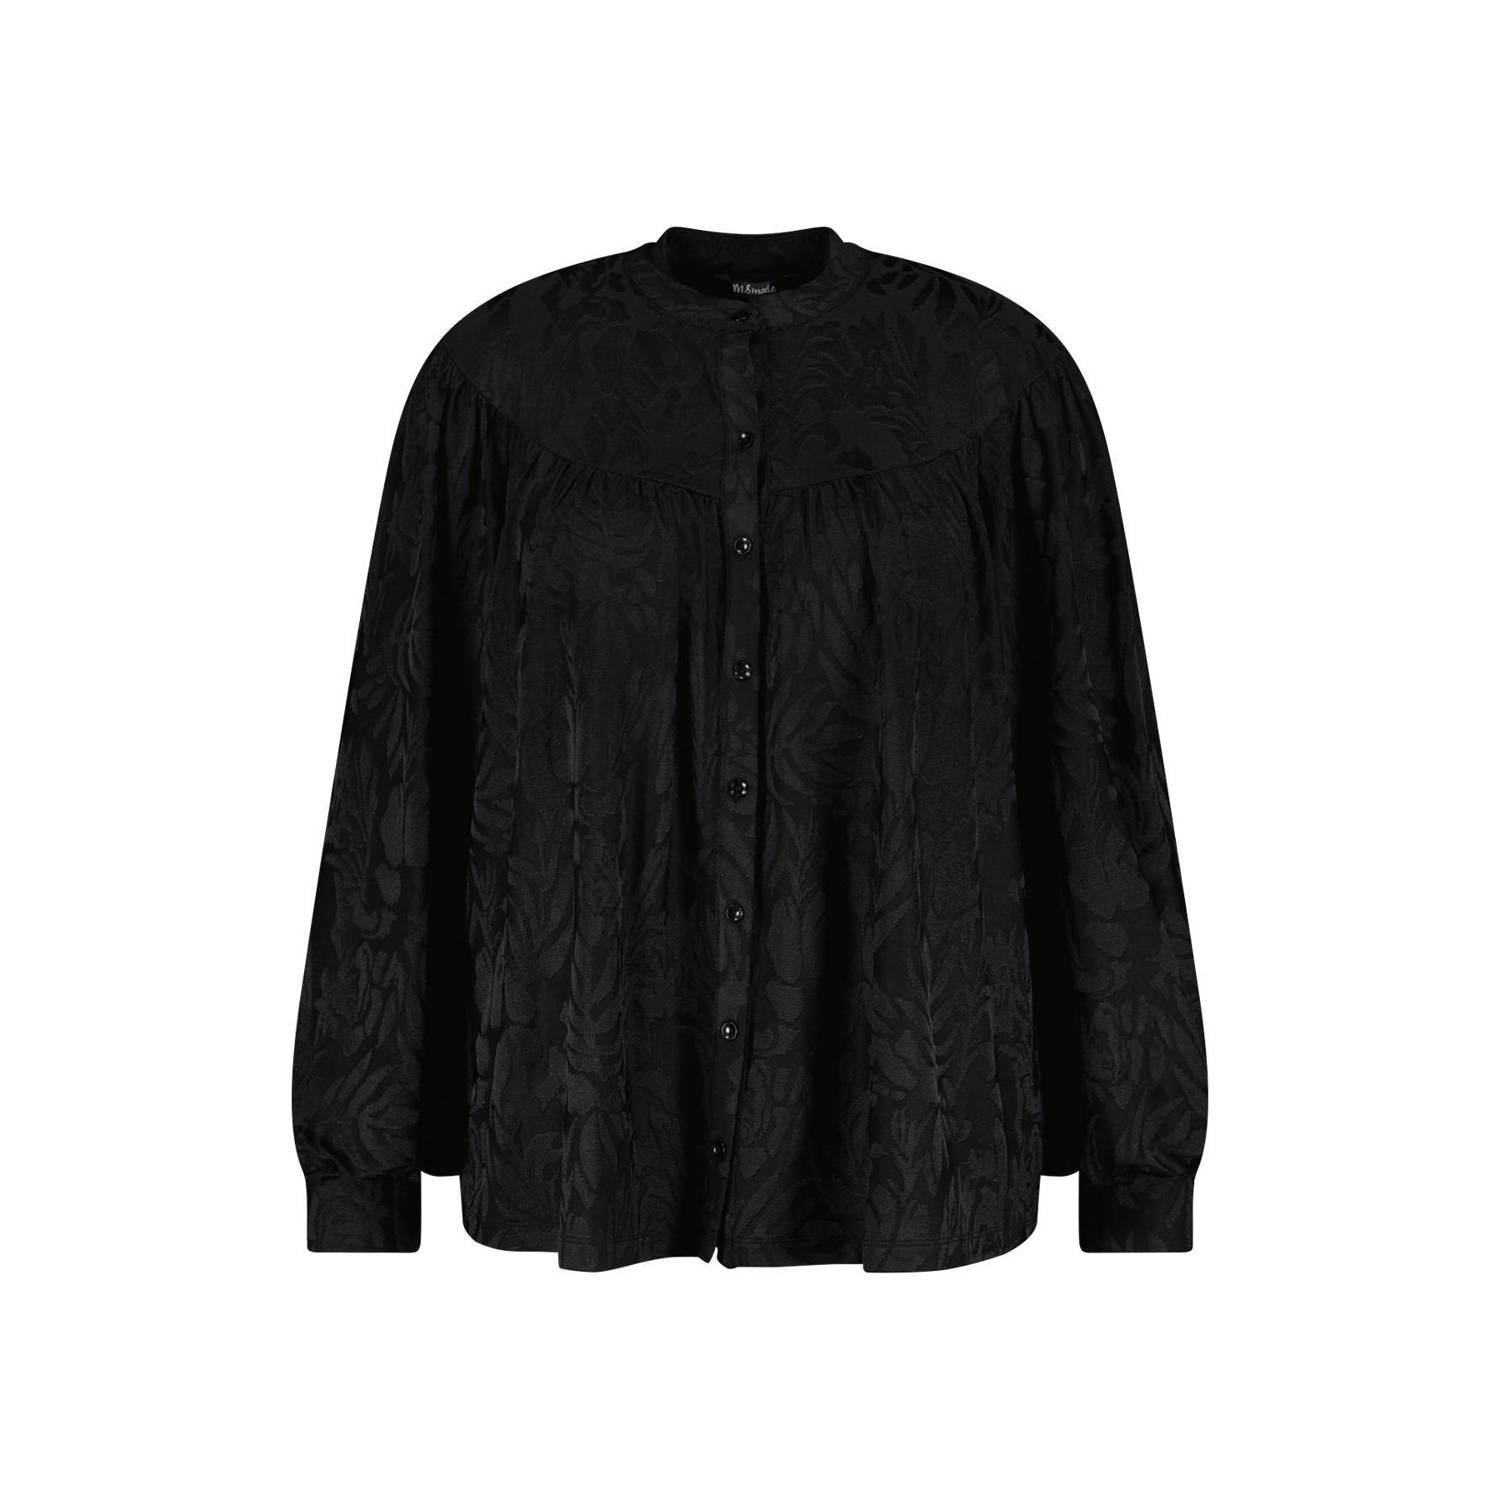 MS Mode blouse met all over print en textuur zwart